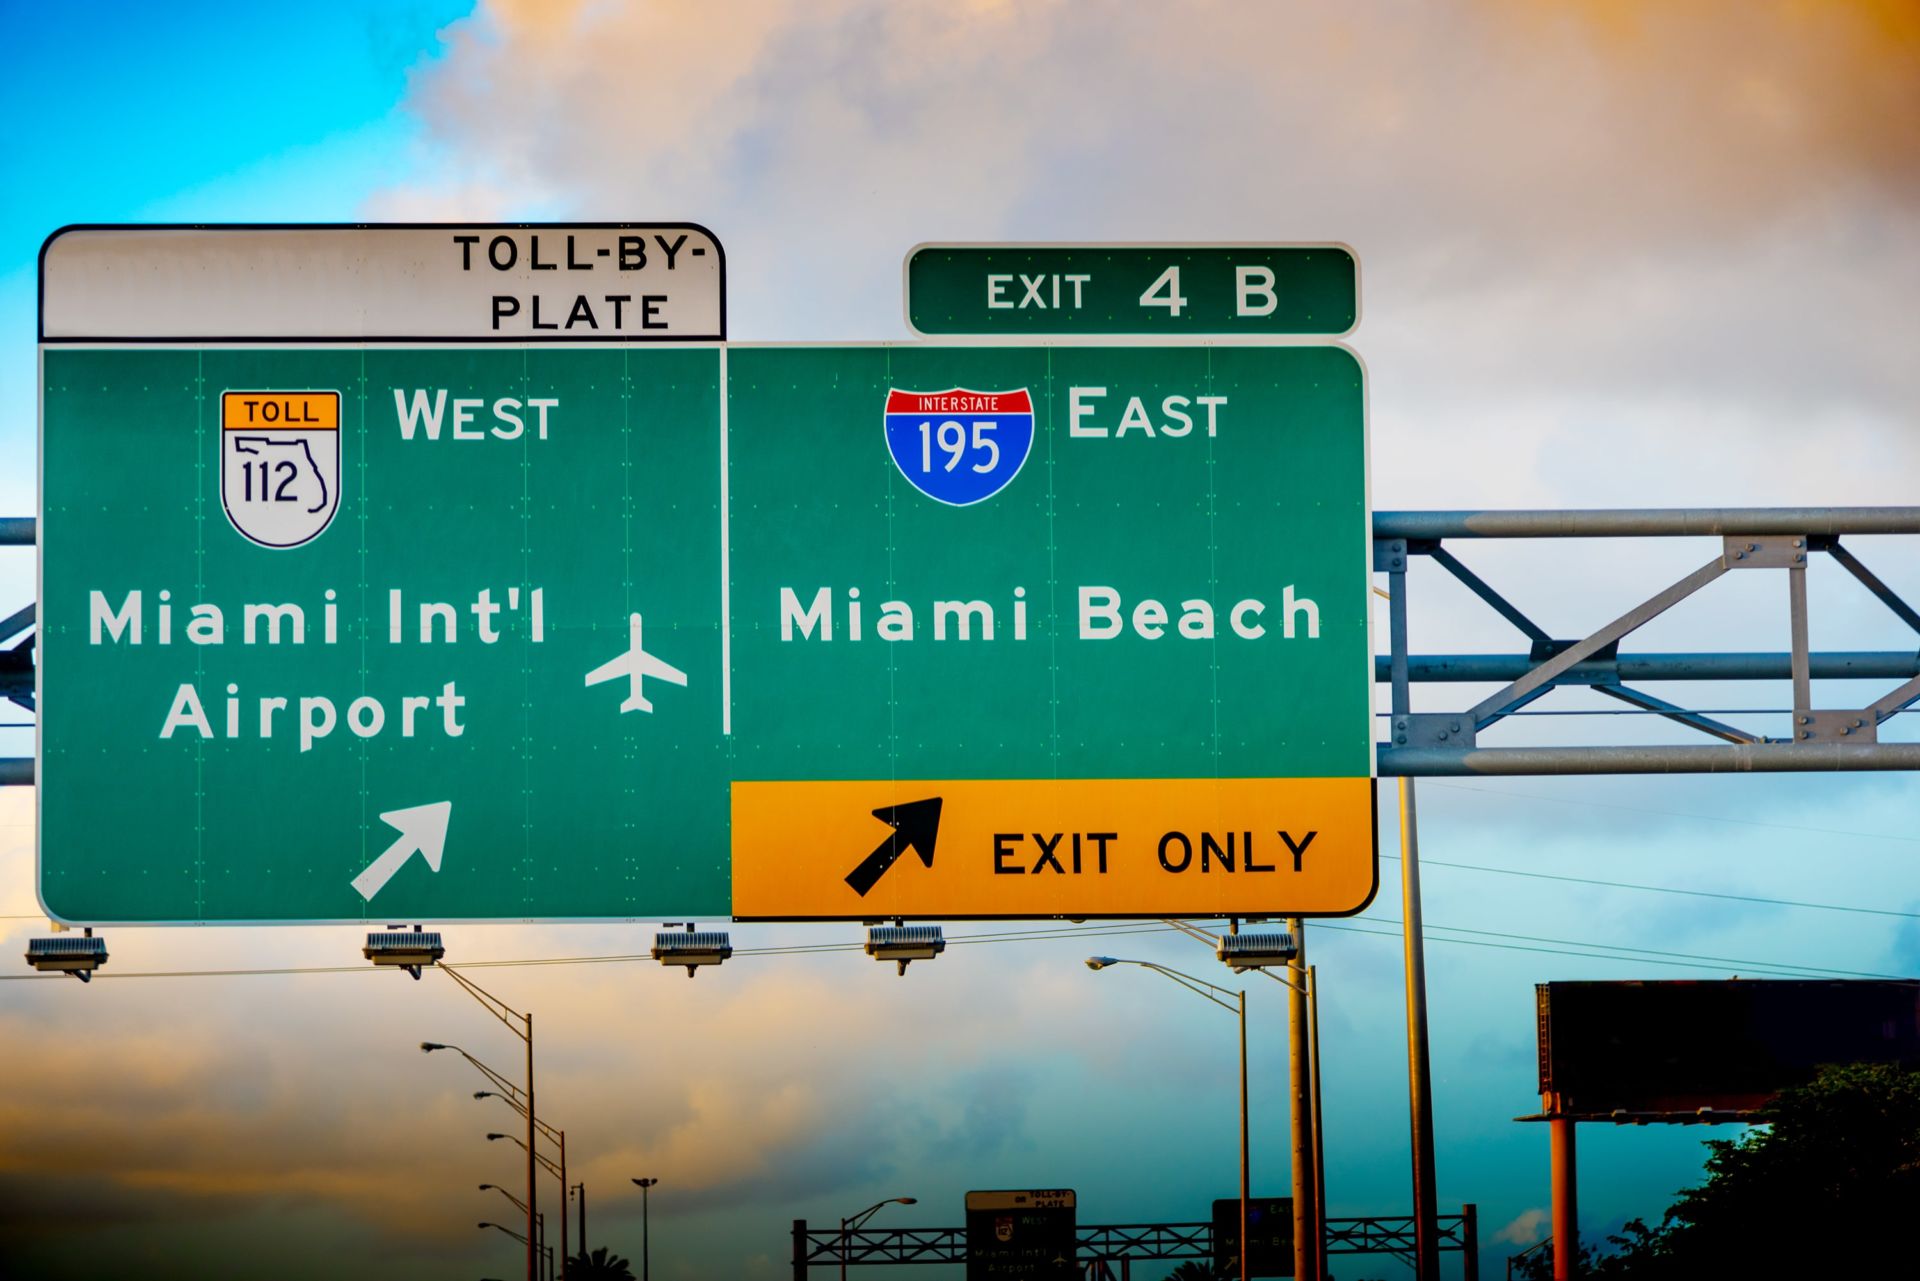 ¿Viajas a Miami con tu familia? Esto necesitas para alquilar un coche